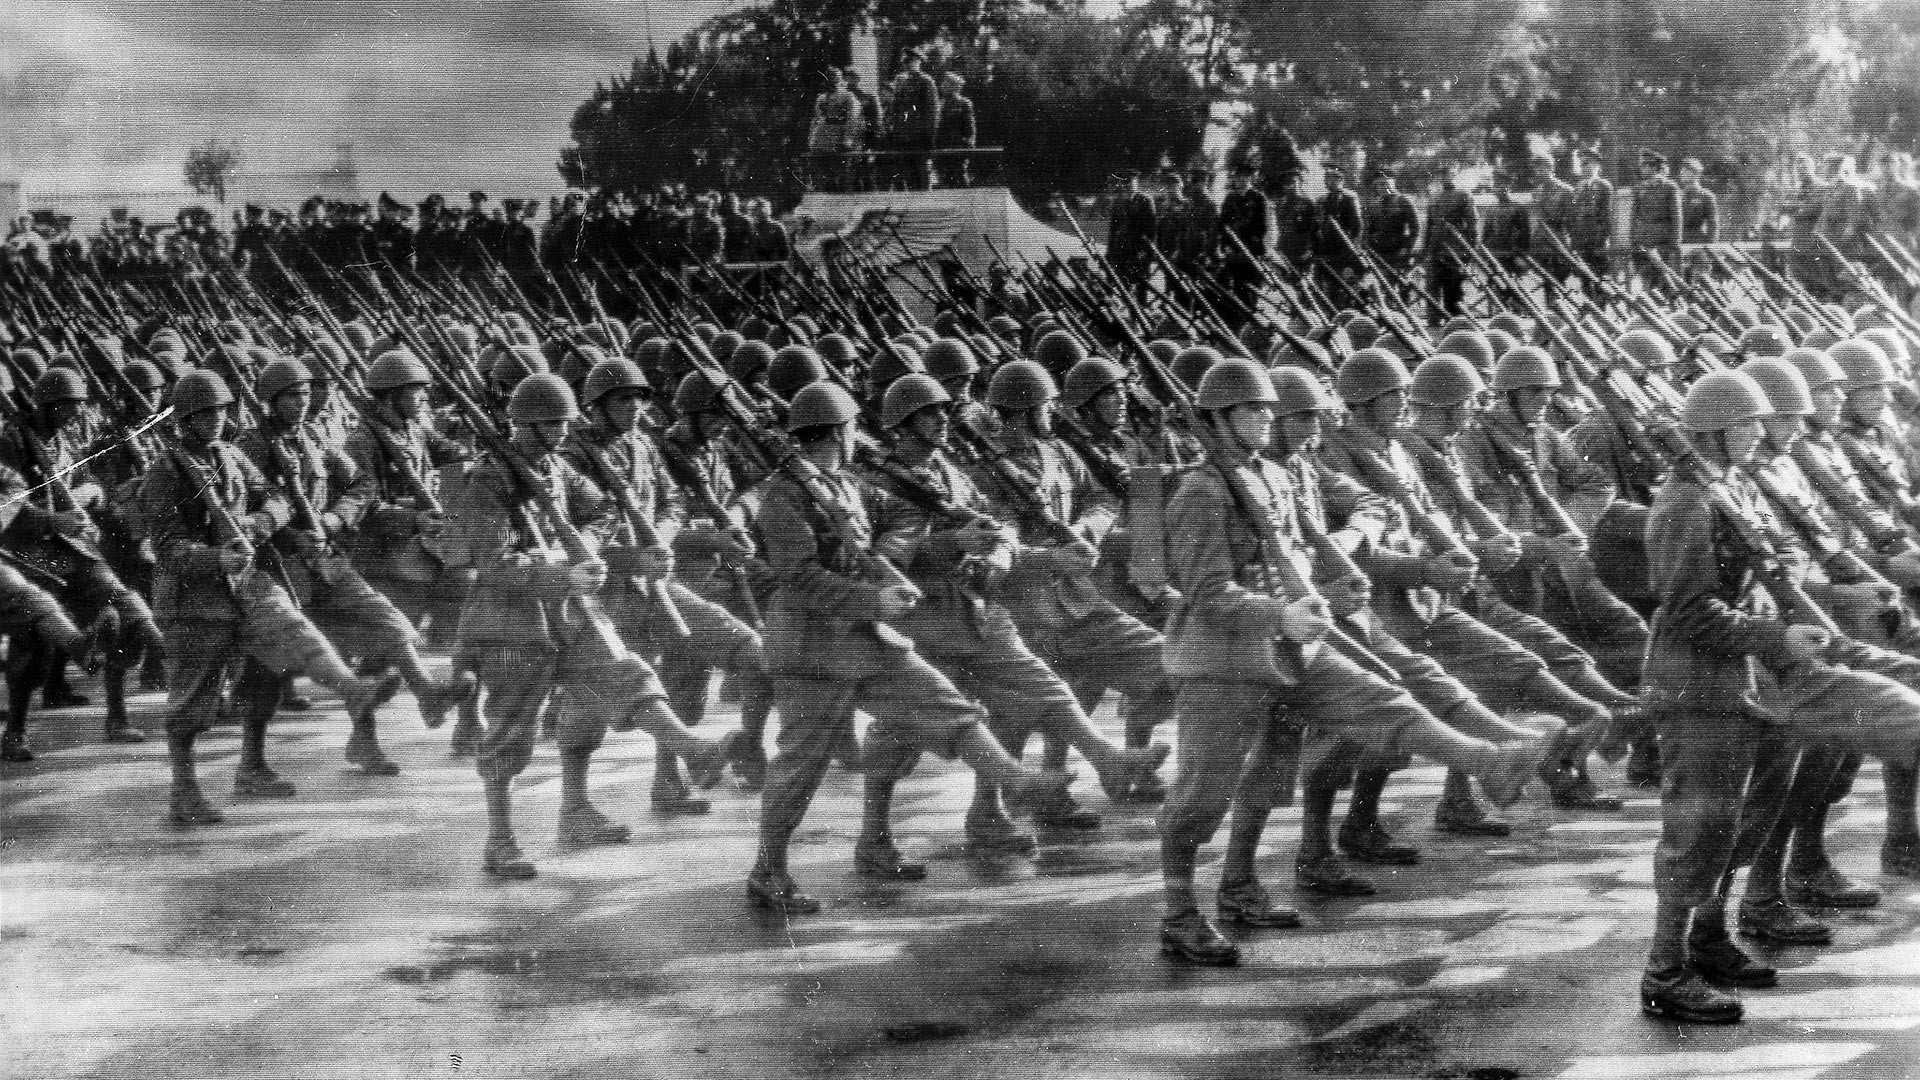 Défilé de soldats du corps expéditionnaire devant Mussolini et l'attaché militaire allemand à Rome, début juillet 1941 